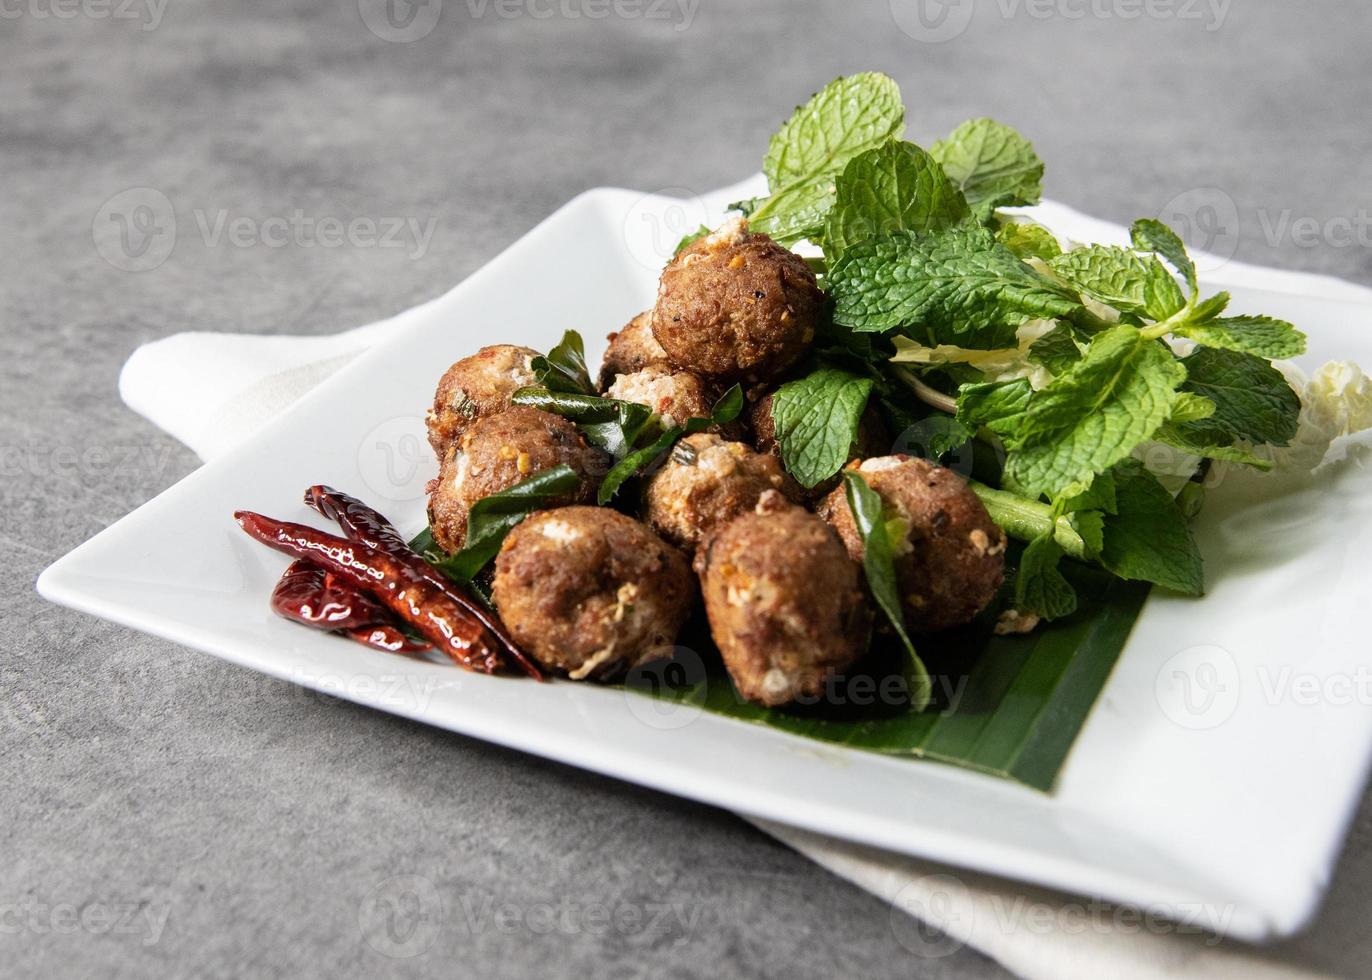 larb de porc frit épicé, laab moo tod, recette de style thaï photo